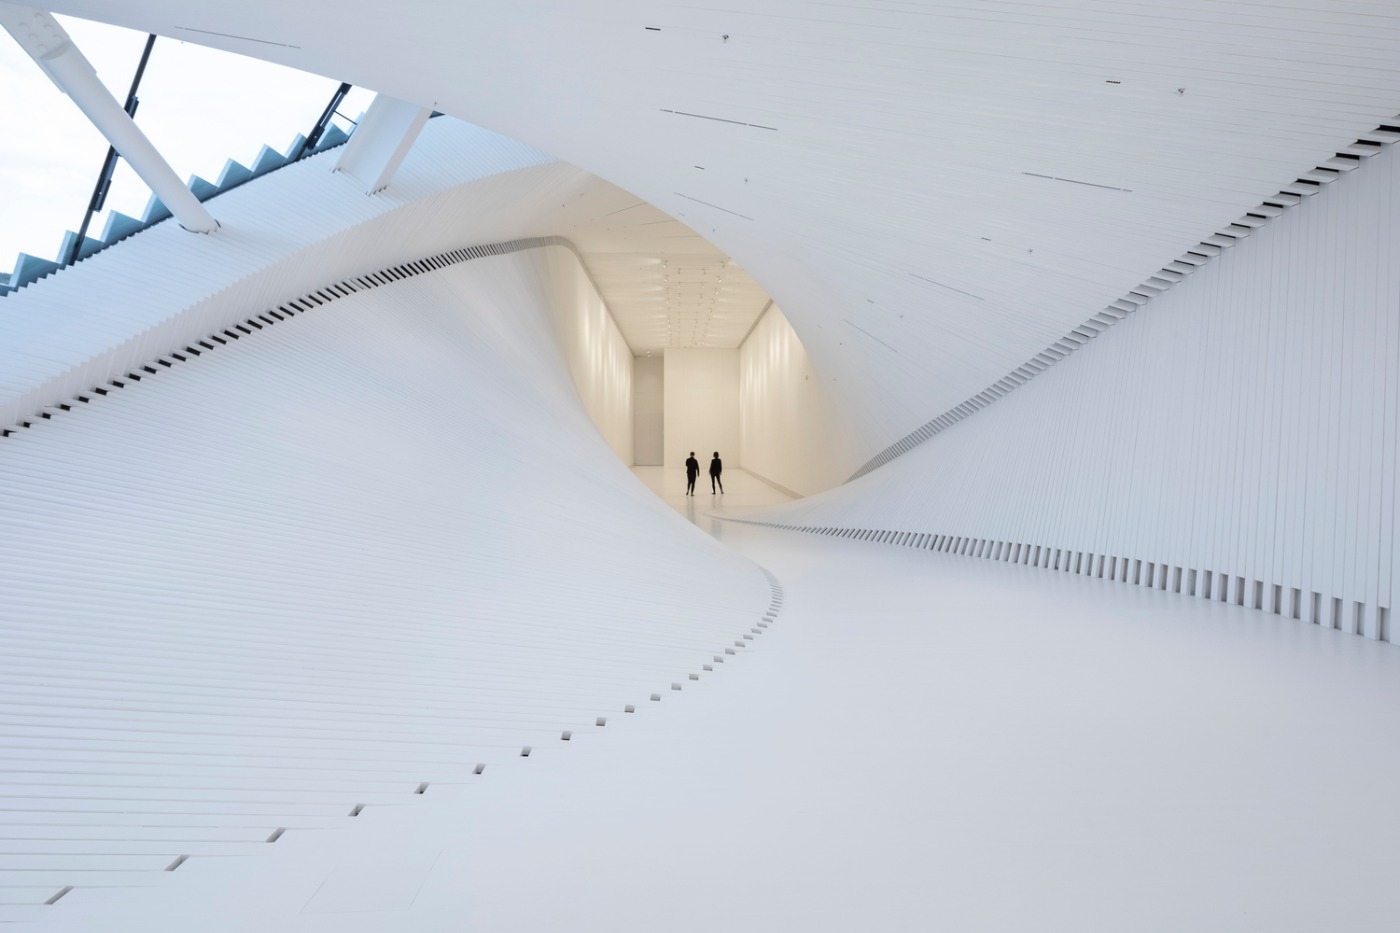 vriden interiör i vitt designad för en modern museivridning i norge